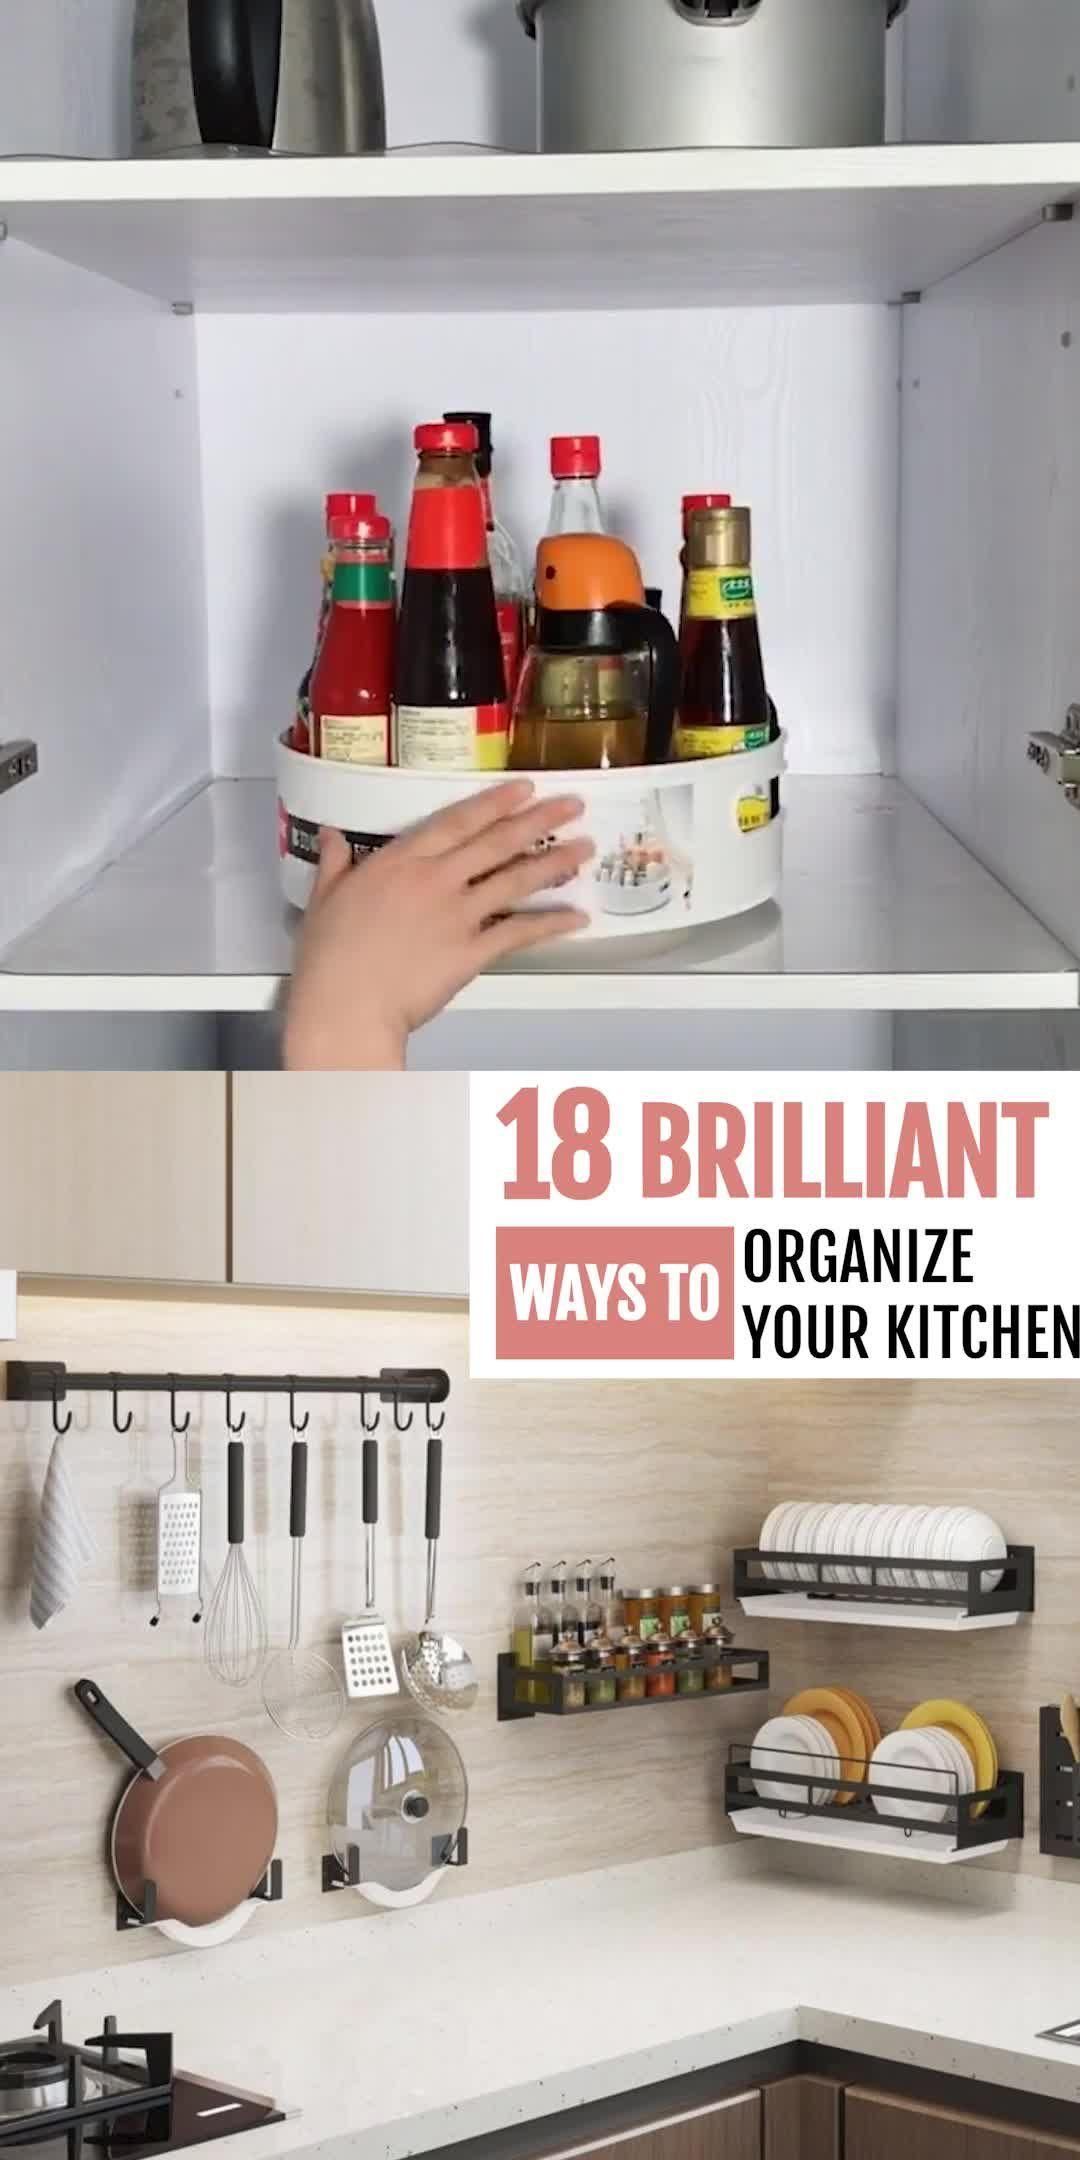 15 Kitchen Organization Ideas (Absolutely Brilliant) -   19 diy Kitchen tips ideas